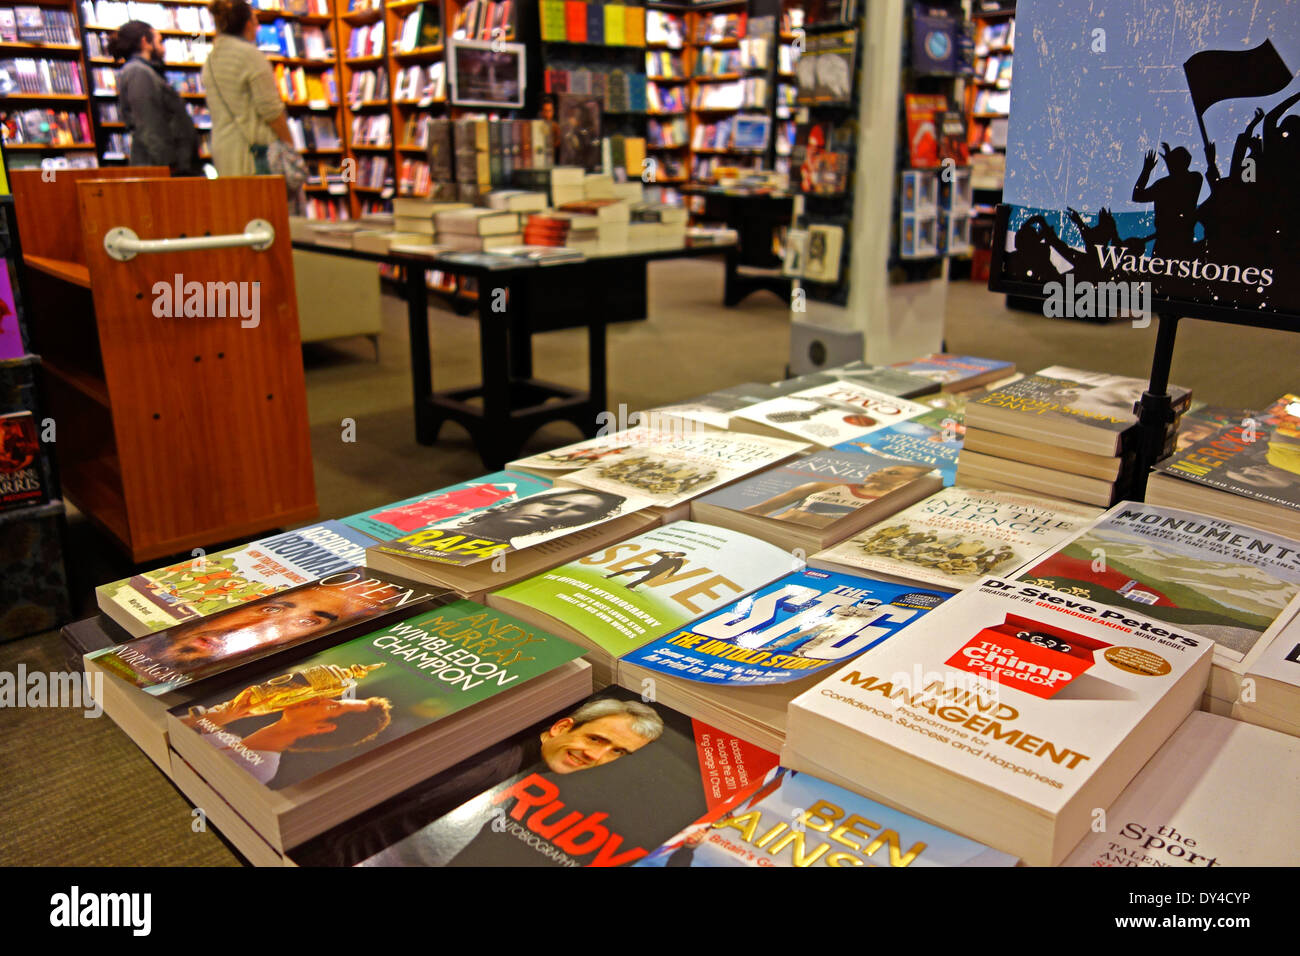 All'interno di un Waterstones book store Foto Stock